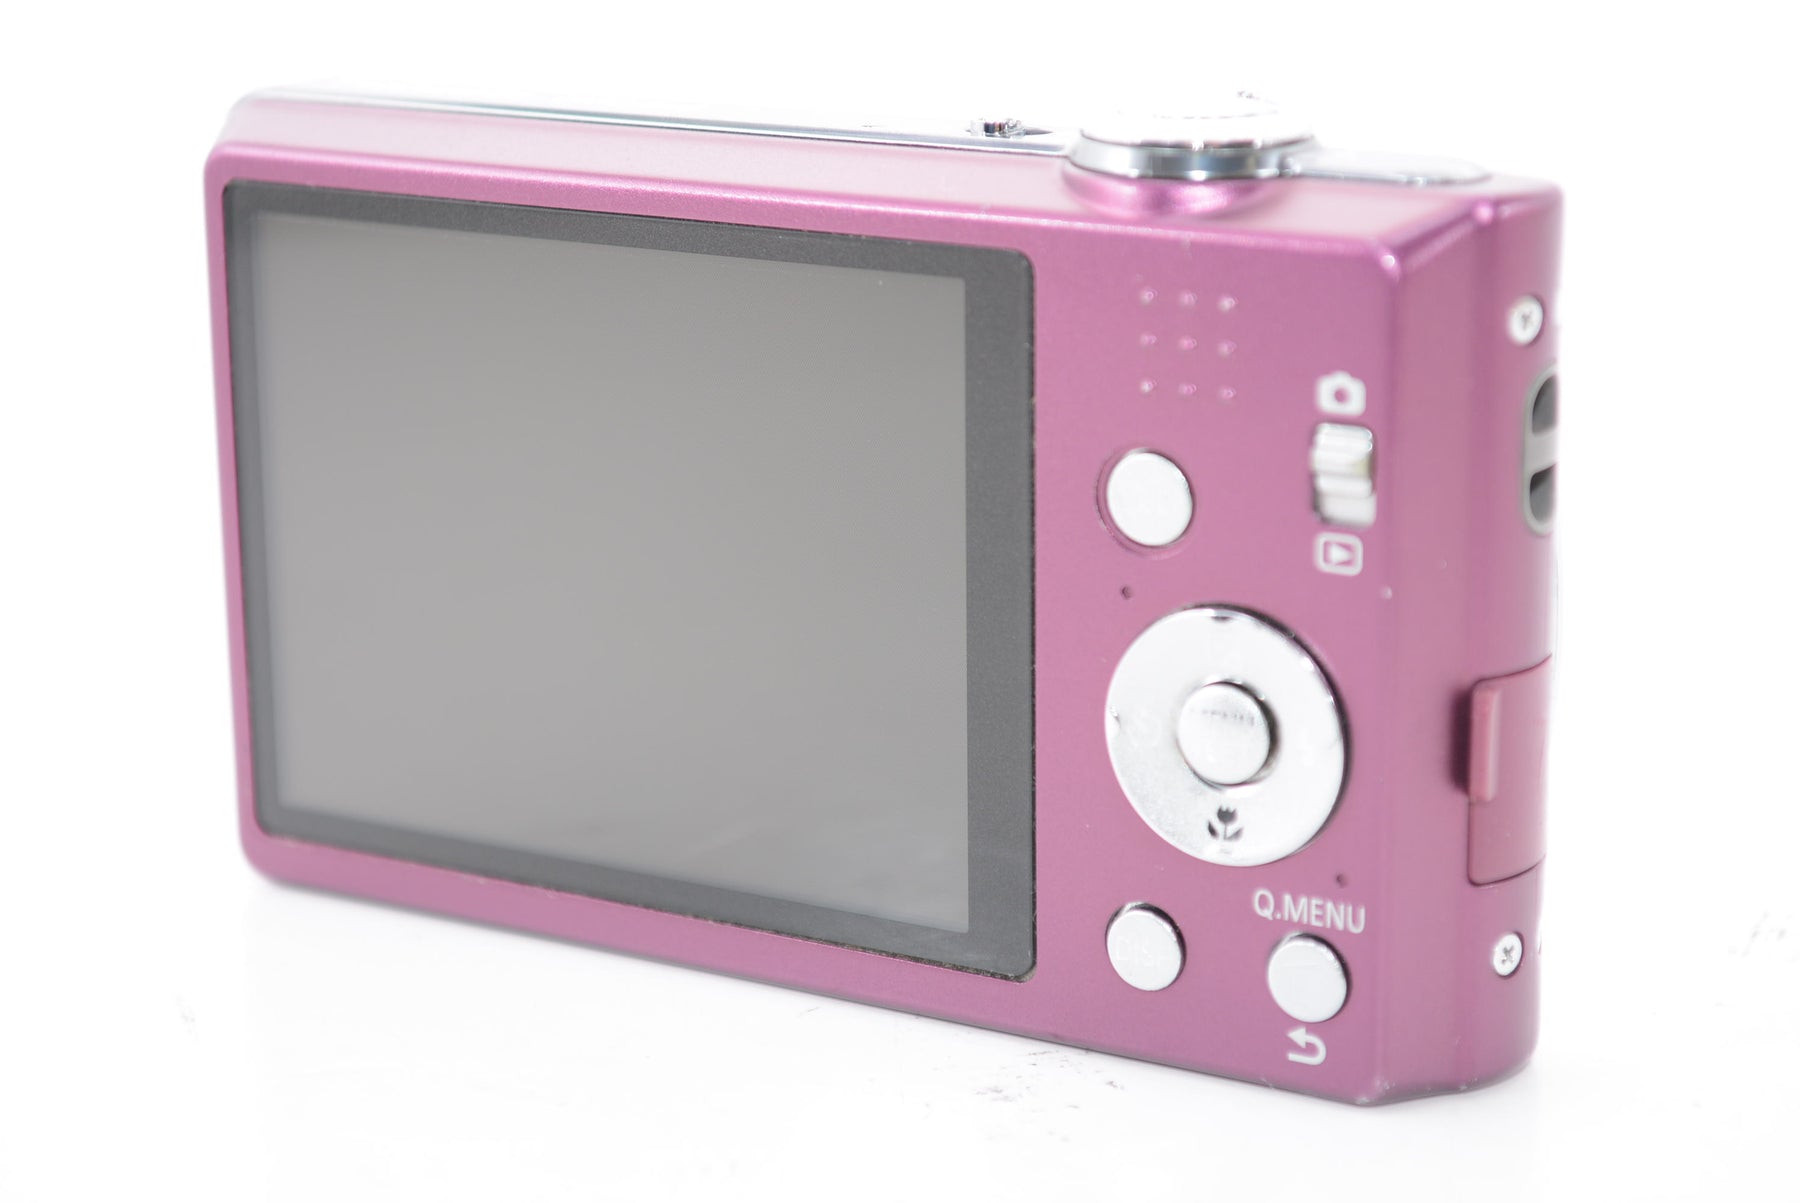 【外観並級】パナソニック デジタルカメラ LUMIX FH5 バイオレット DMC-FH5-V